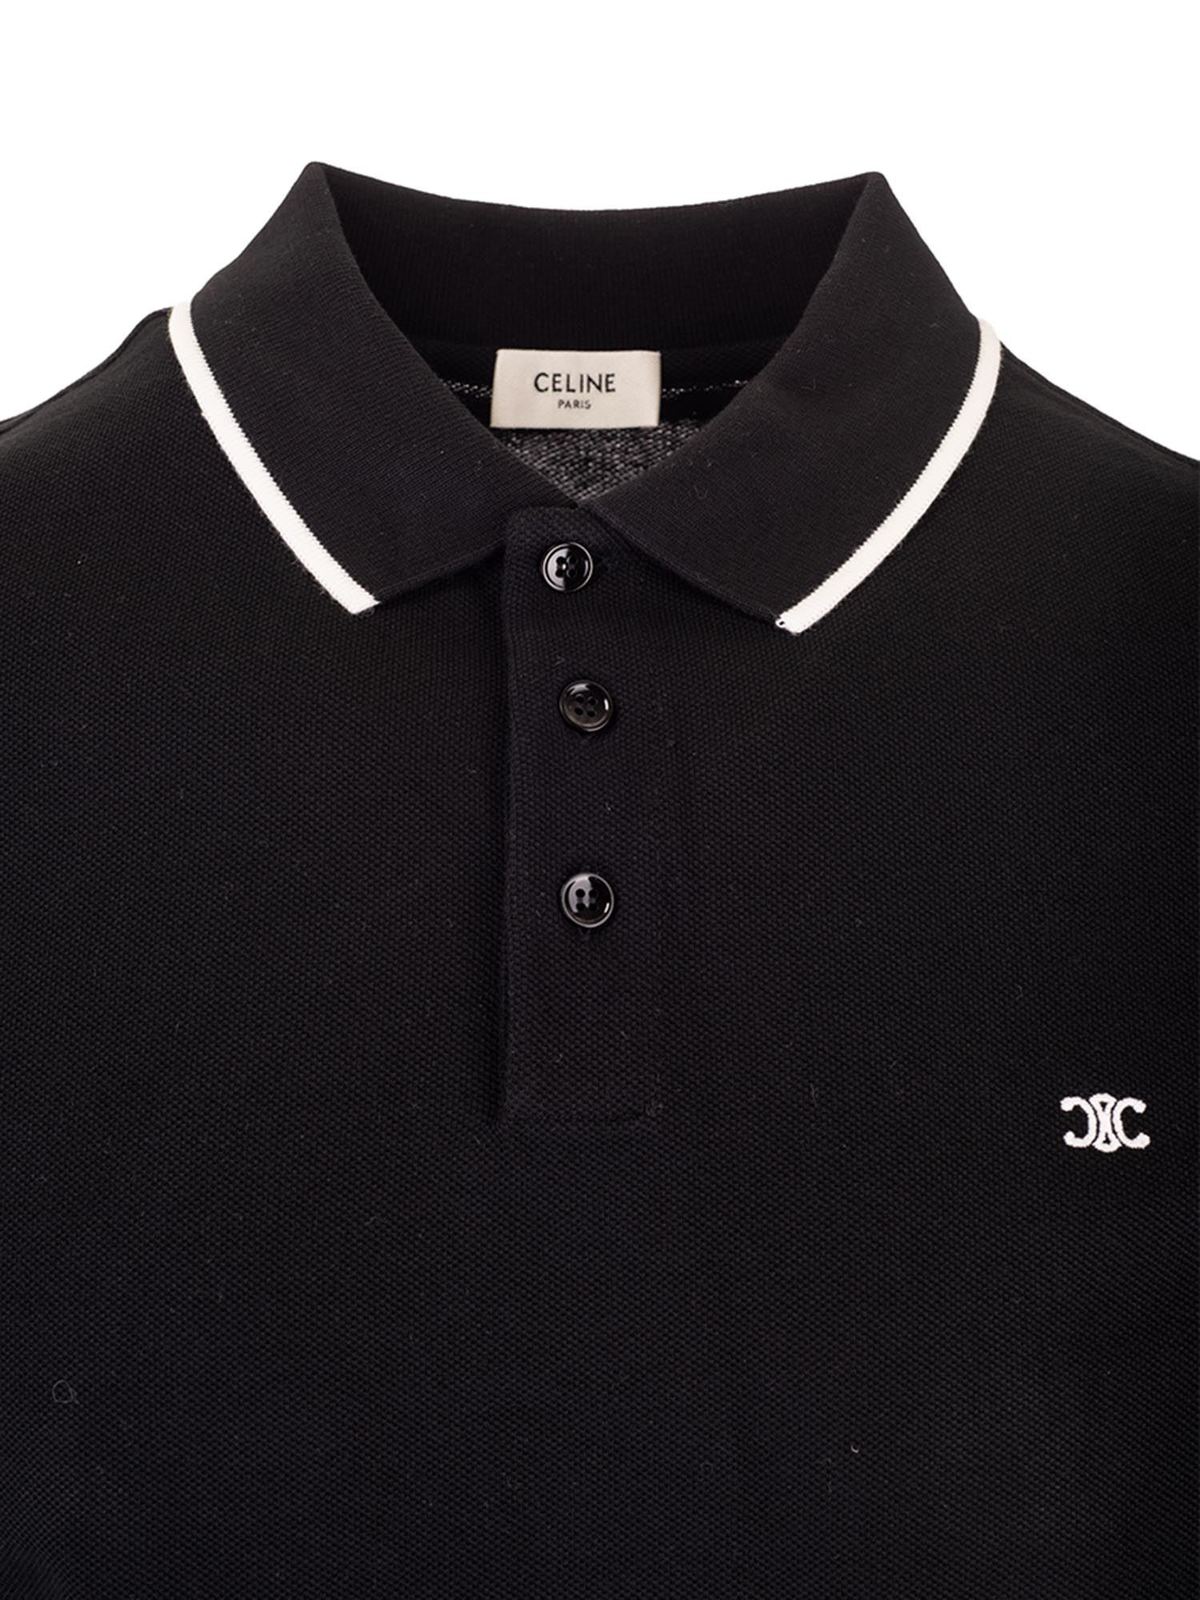 Céline - Triomphe polo shirt in black - polo shirts - 2X136043F38AW